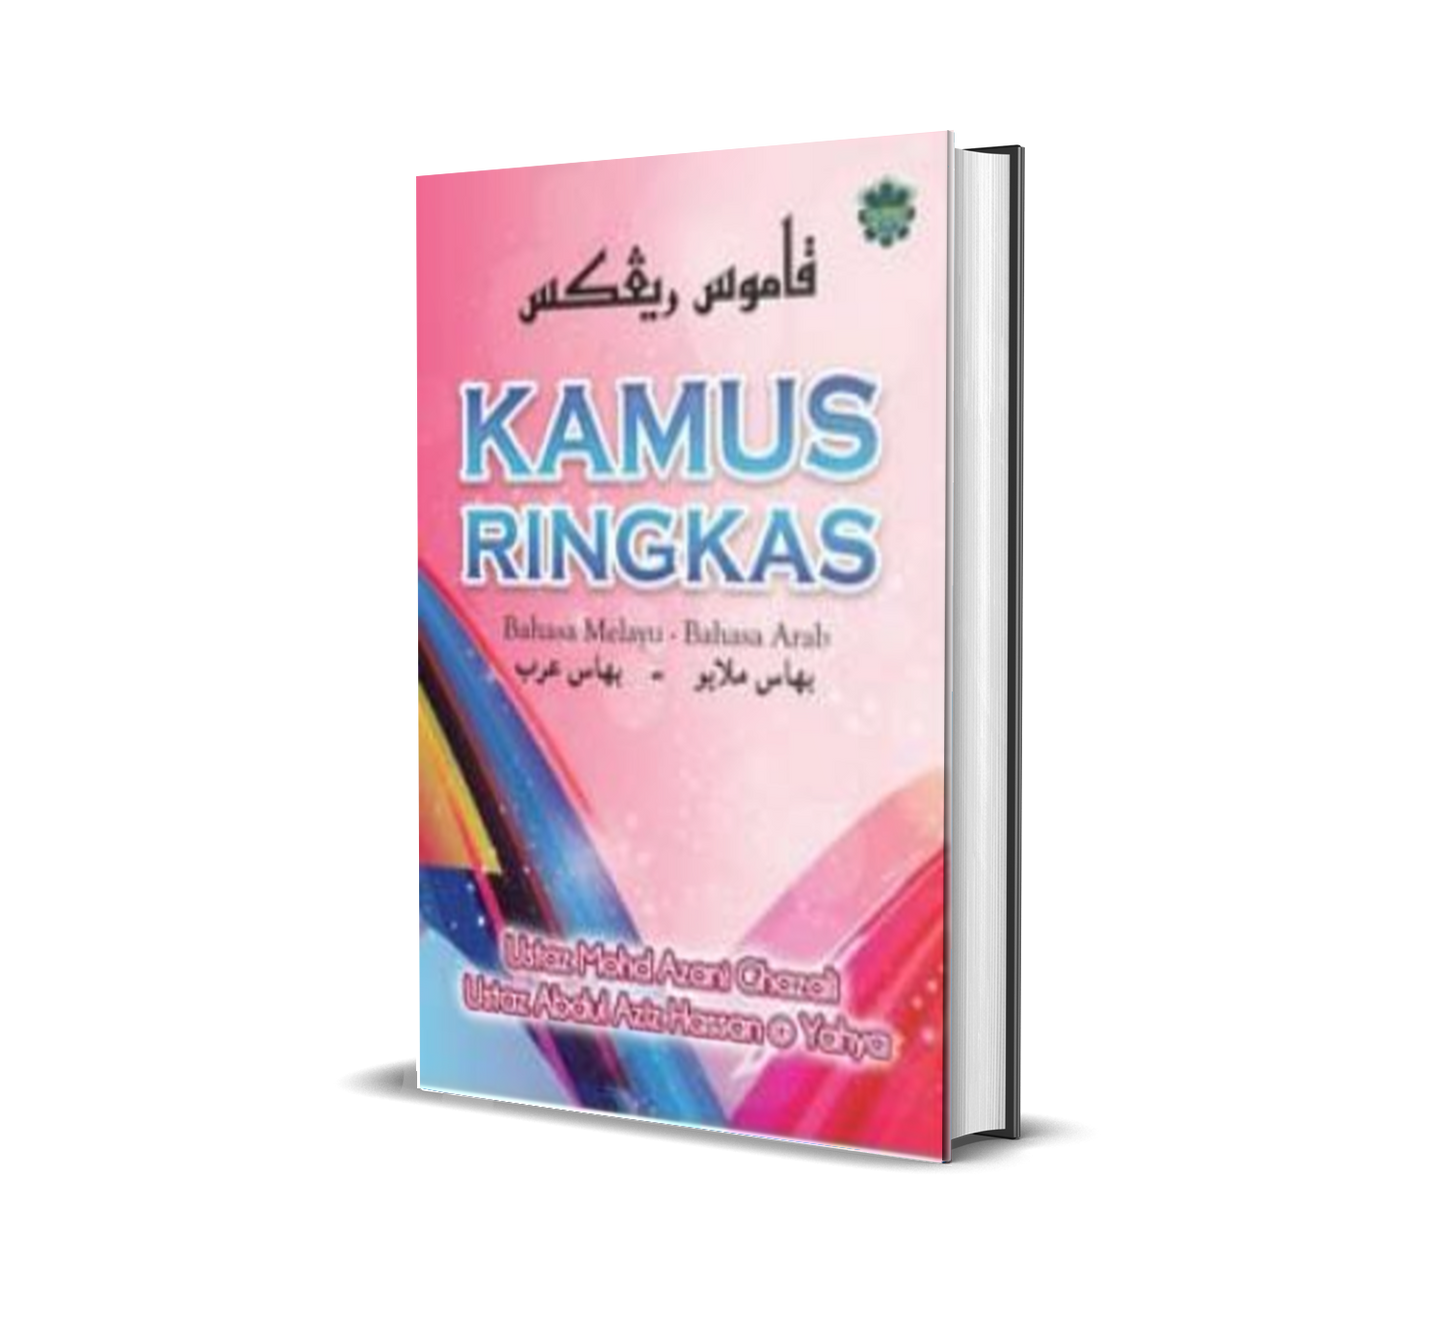 Kamus Ringkas:  Bahasa Melayu-Bahasa Arab (Edisi 2001)